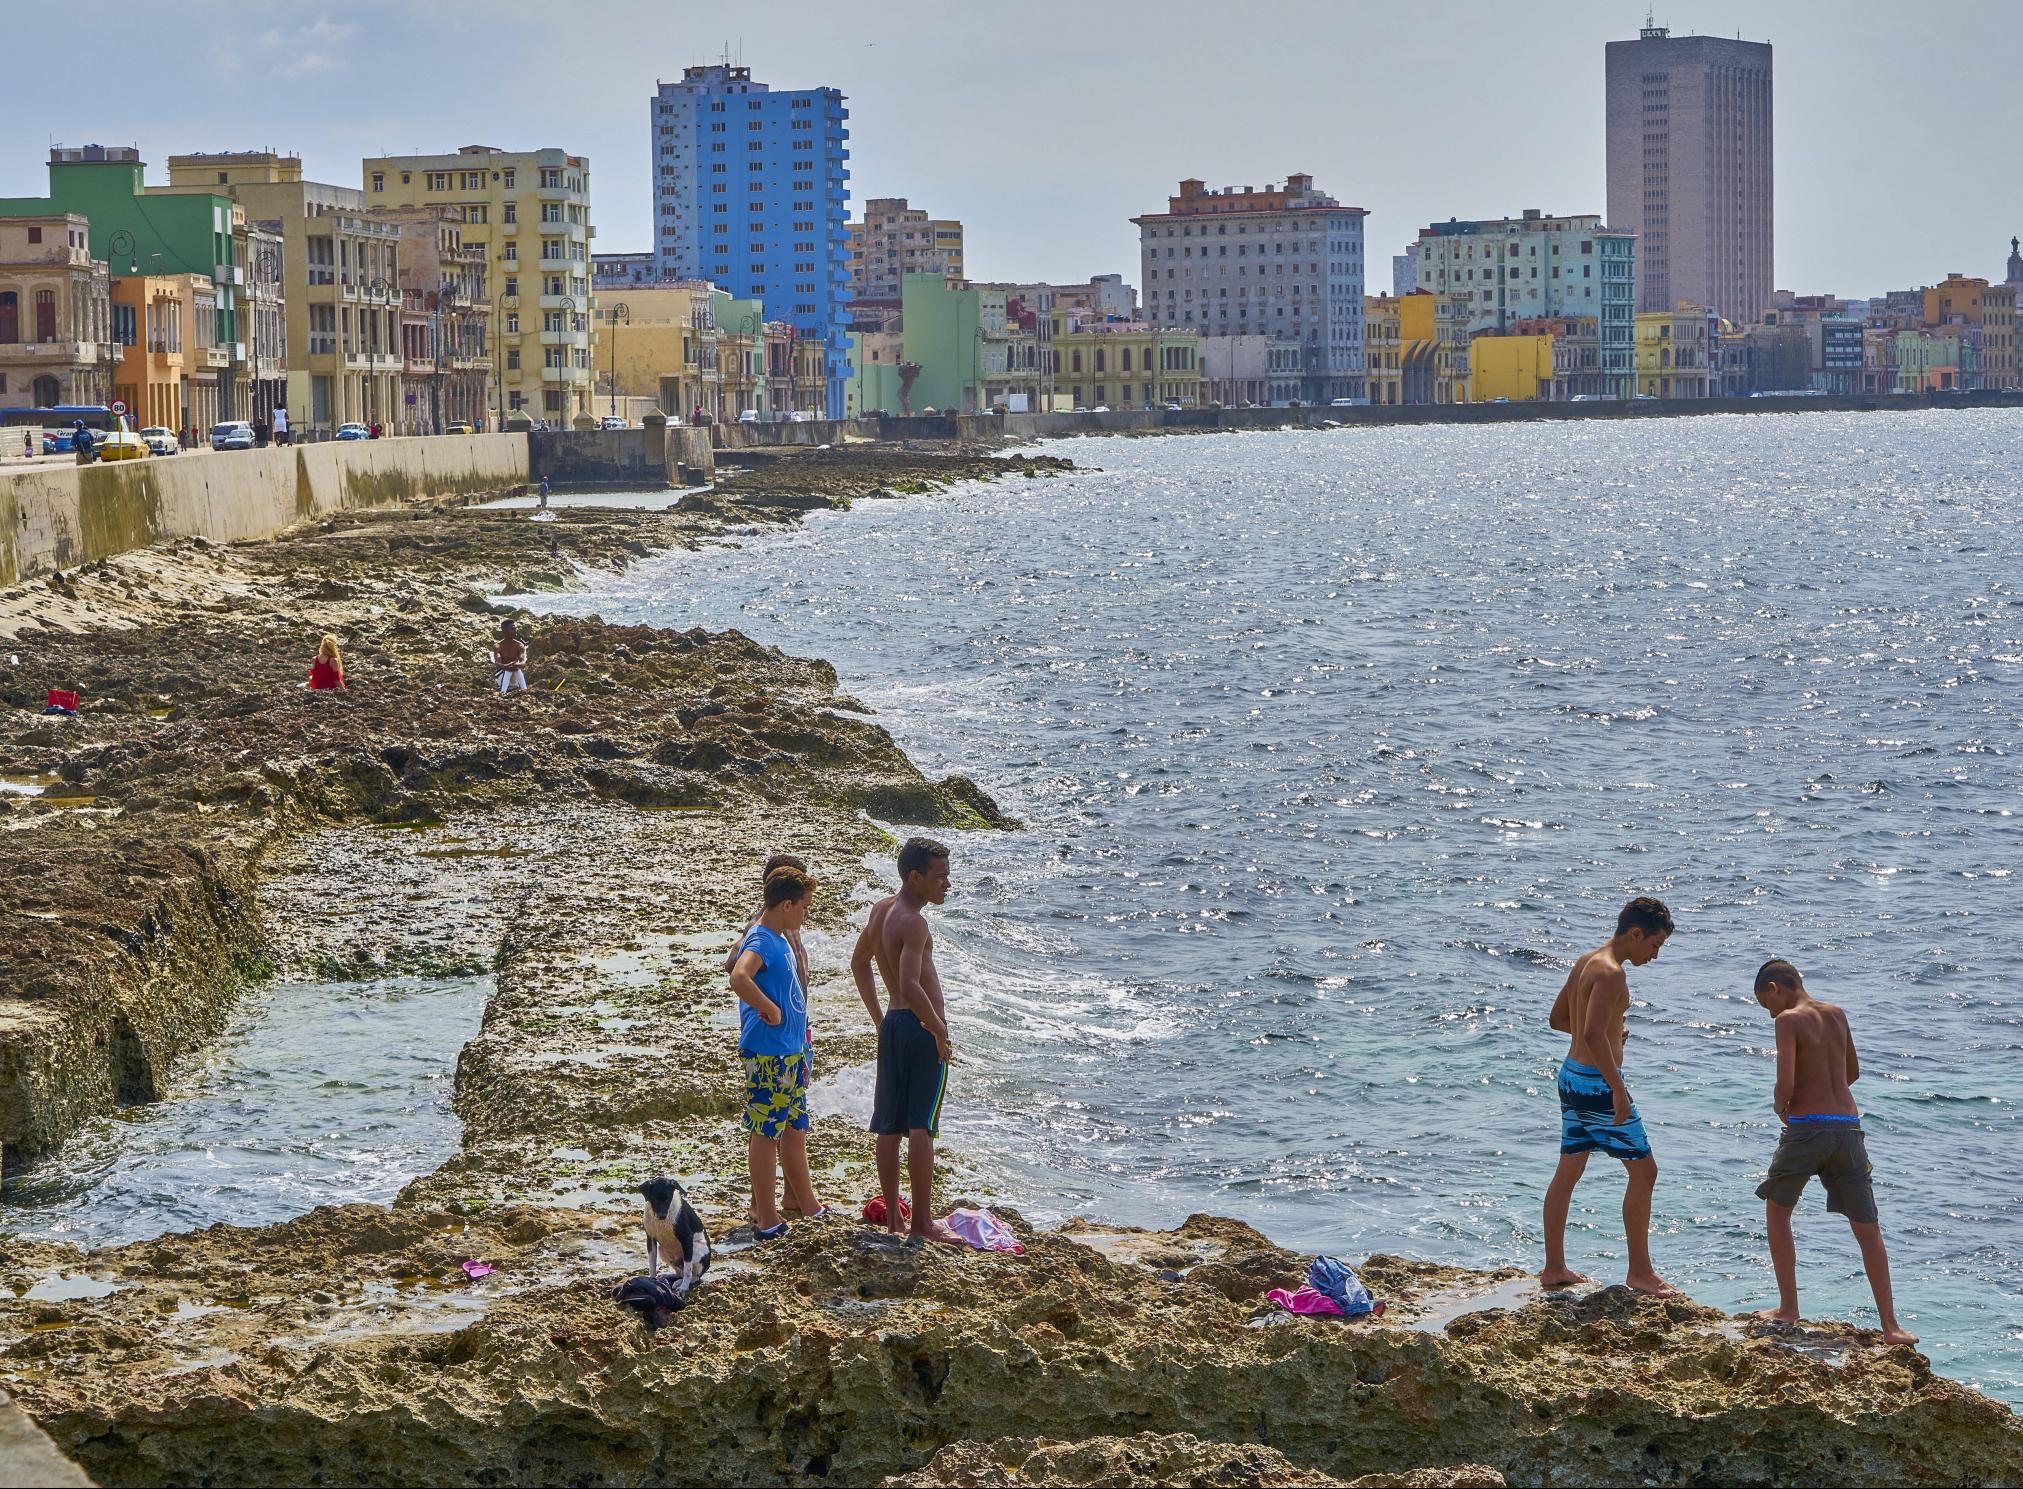 Jugendliche beim Baden an der Uferpromende von Havanna, 29. Januar 2022.